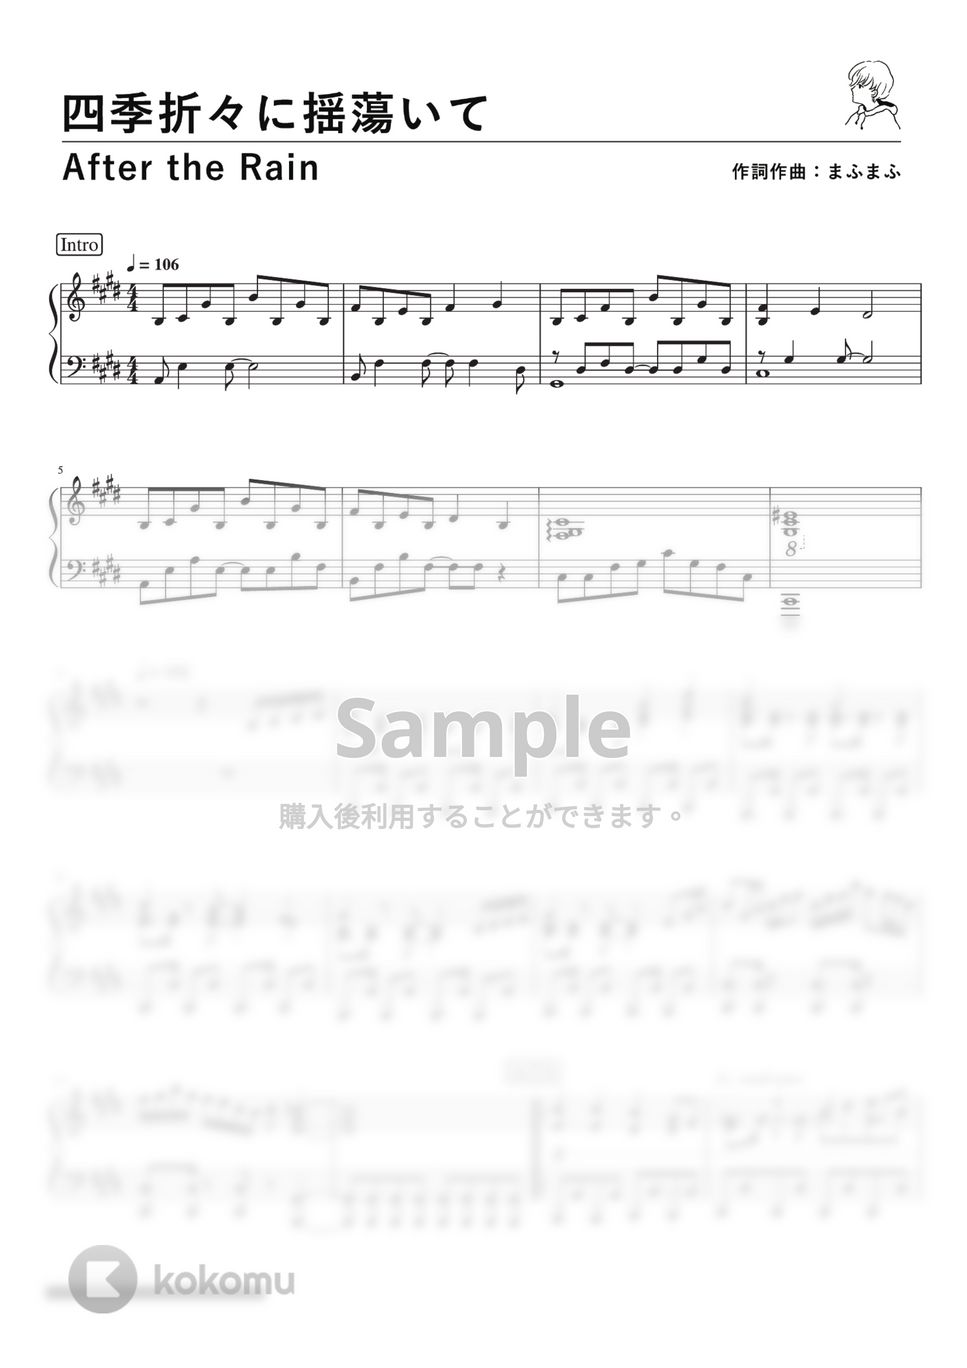 After the Rain (そらる×まふまふ) - 四季折々に揺蕩いて (PianoSolo) by 深根 / Fukane